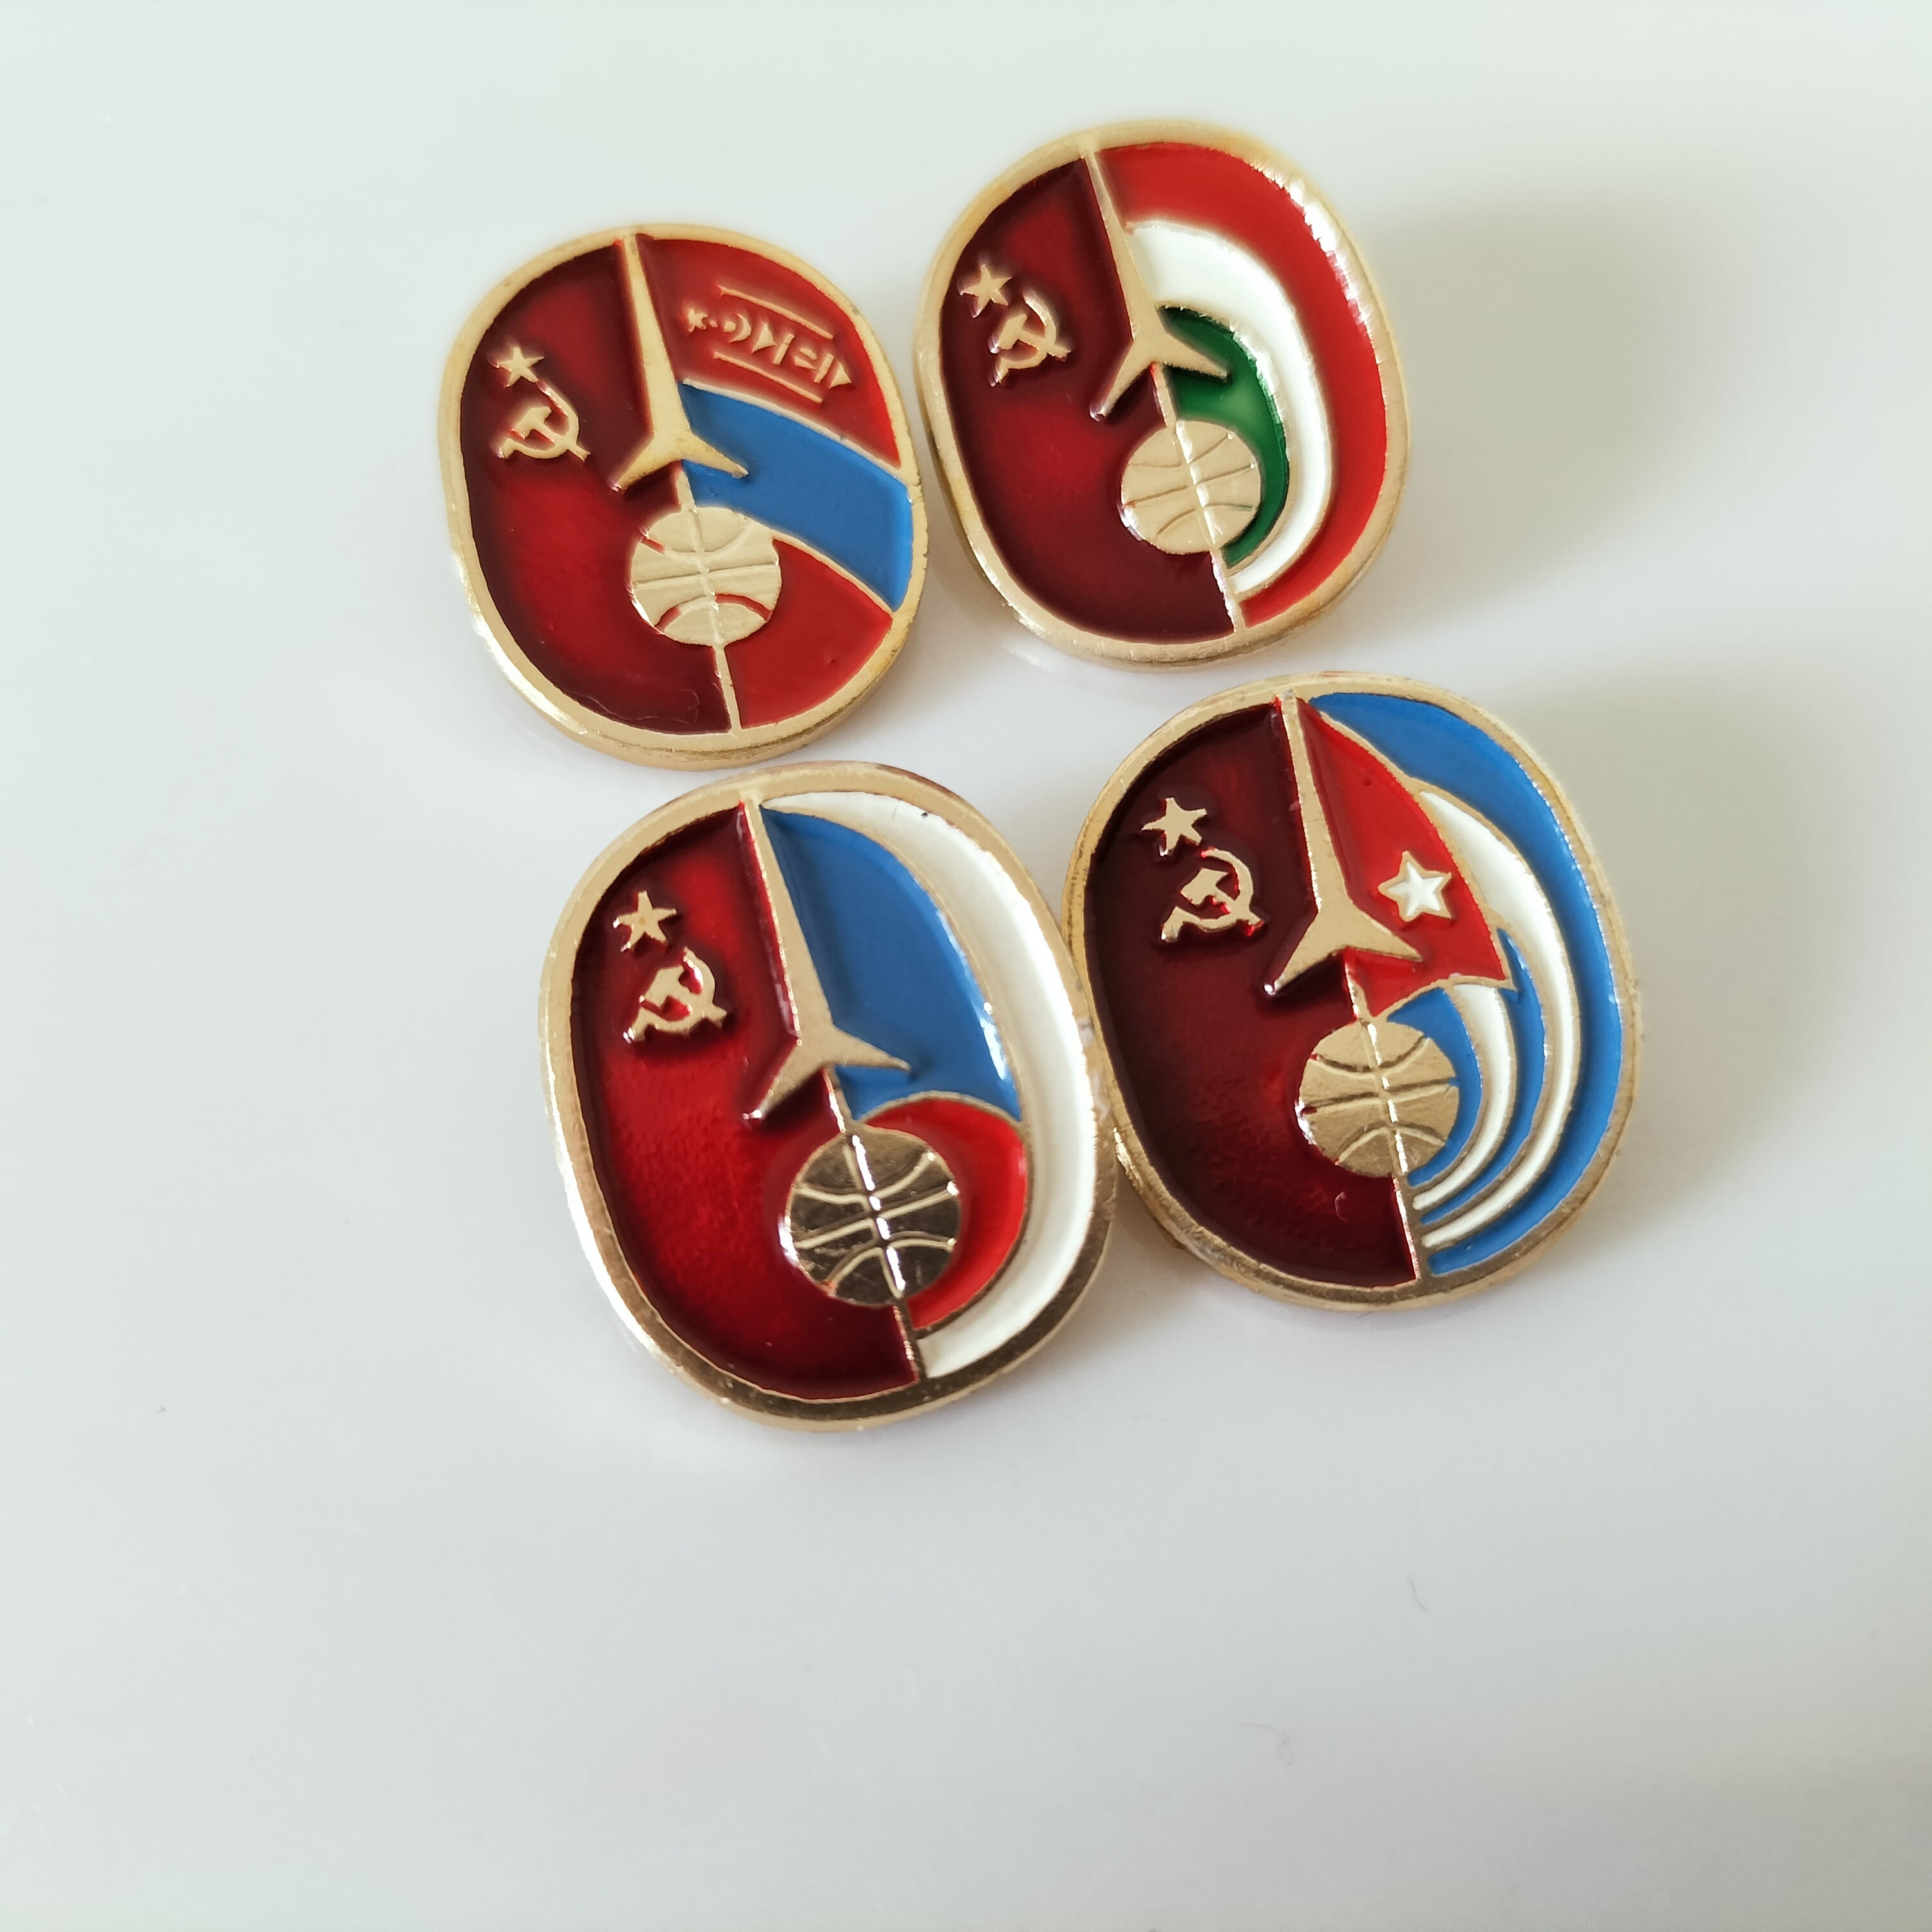 【バッジ品番203】北欧ロシア、ソビエトのアンティークバッジ・記念メダル4個 共産主義国家